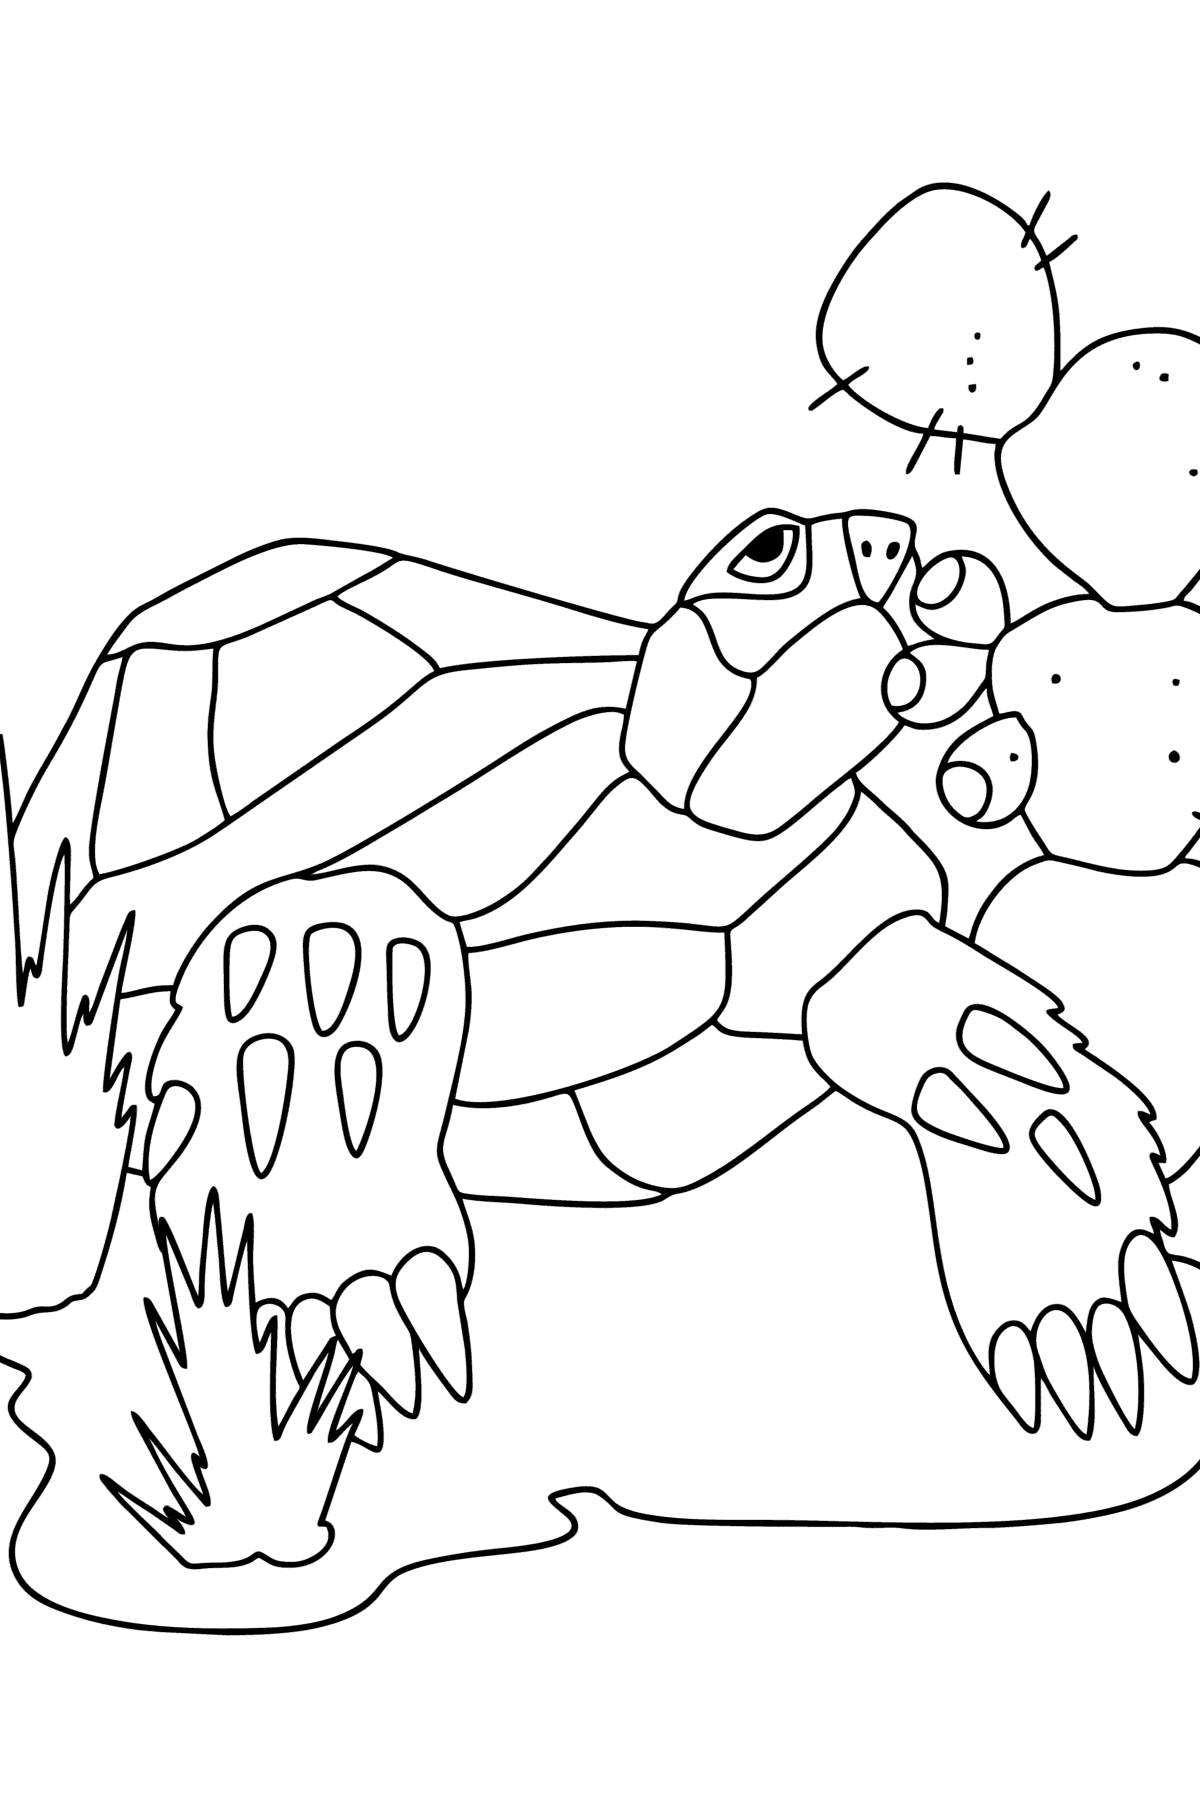 Disegno da colorare Tartaruga nel deserto - Disegni da colorare per bambini